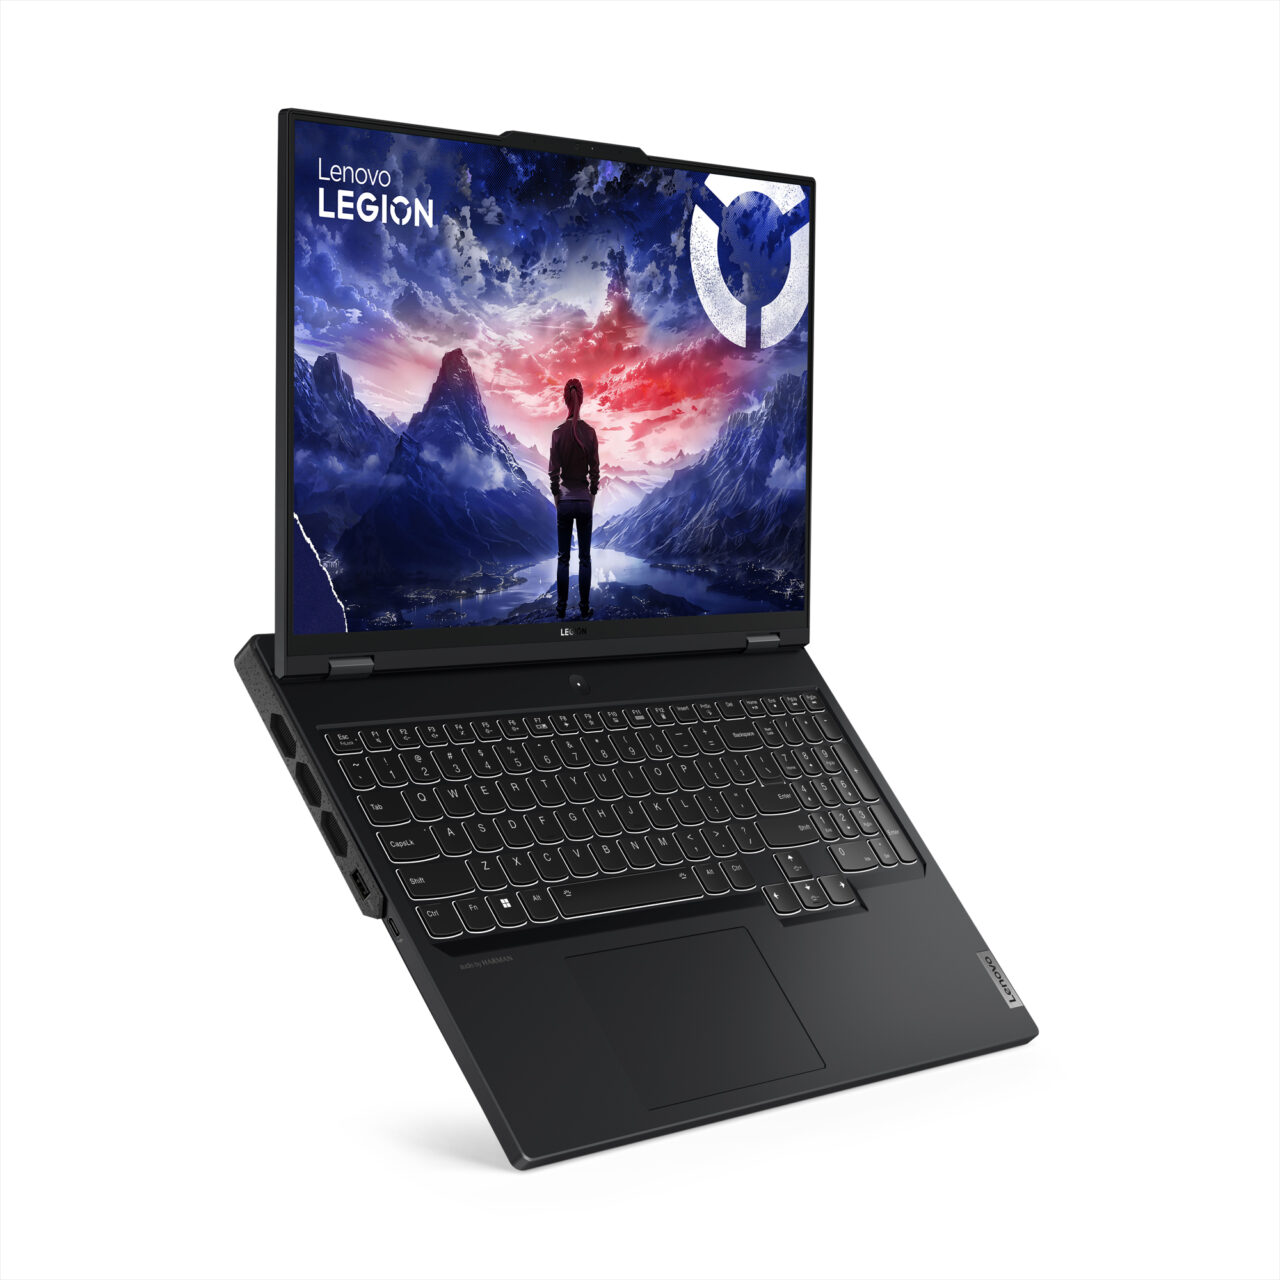 Laptop Lenovo Legion otwarty z grafiką przedstawiającą postać ludzką stojącą na tle górskiego krajobrazu i zachodzącego słońca na ekranie.